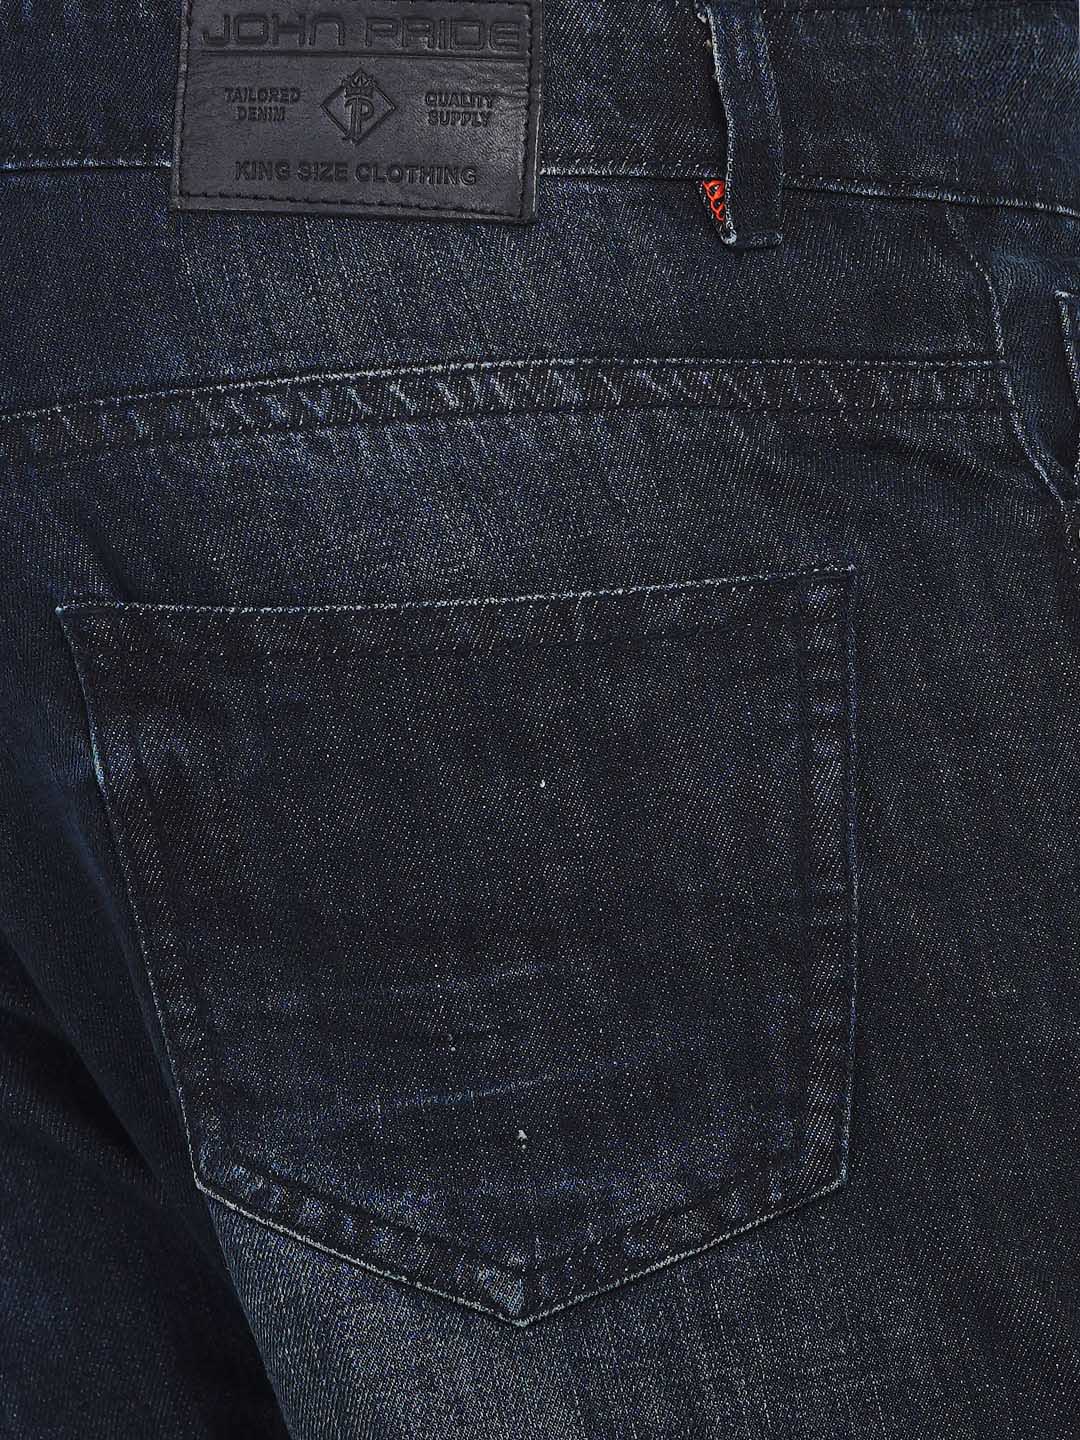 bottomwear/jeans/JPJ1281/jpj1281-2.jpg